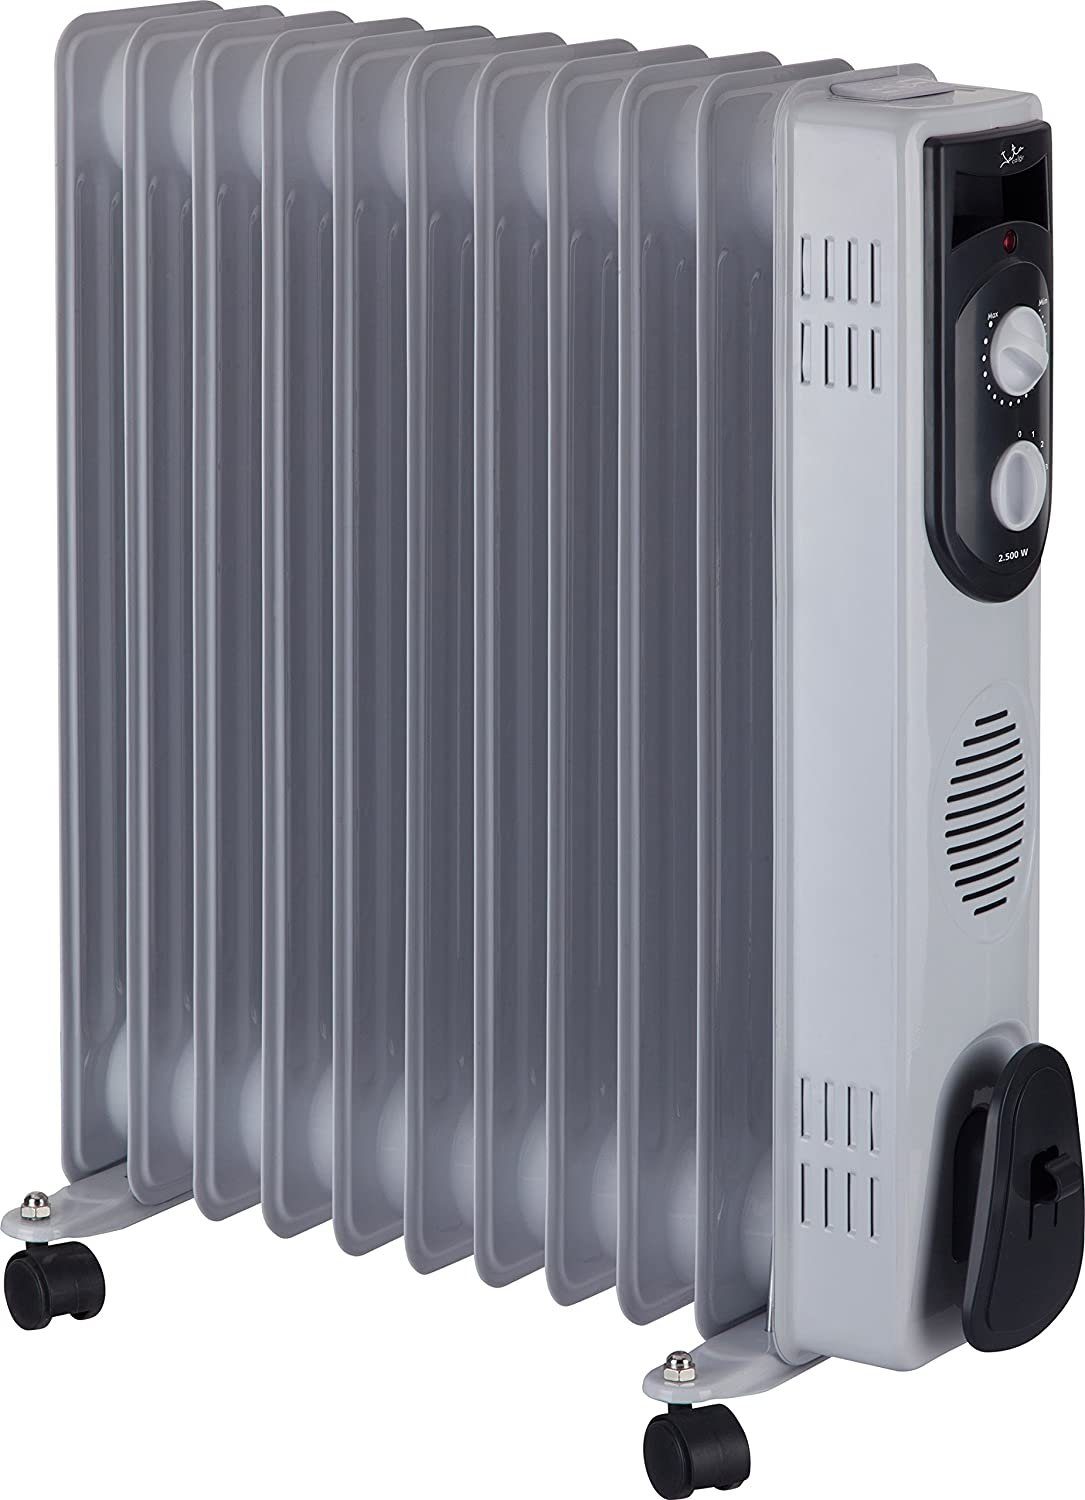 Jata Heizkörper Ölradiator R107, R109, R111 bis 2500 W, mobile Elektroheizung mit 3 Heizstufen, Thermostat einstellbar